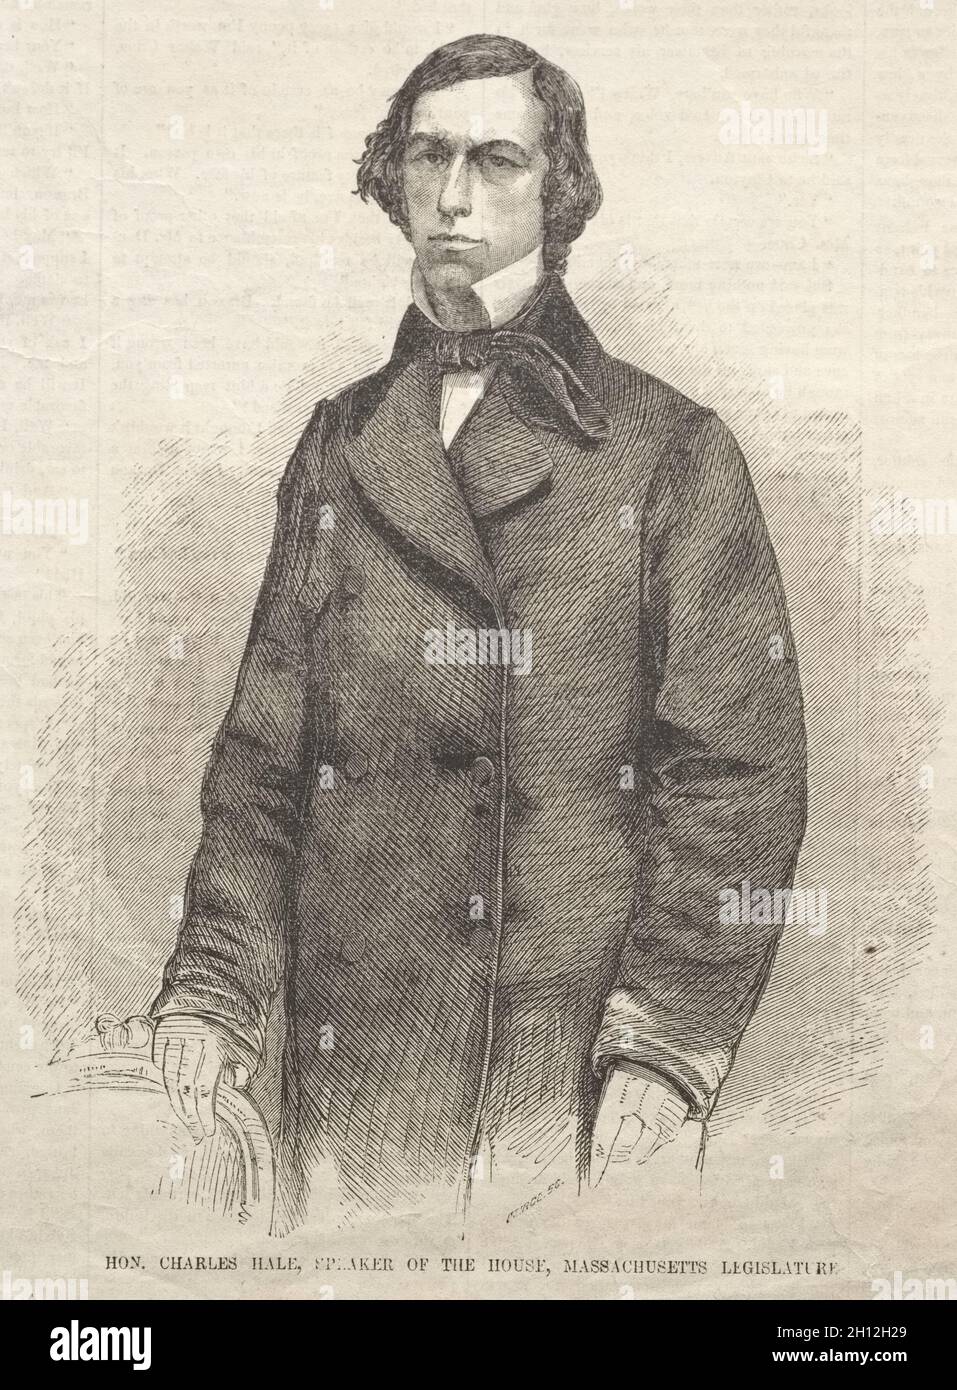 Hon. Charles Hale, Speaker of the House, Massachusetts Legislature, 1859. Winslow Homer (American, 1836-1910). Wood engraving; Stock Photo